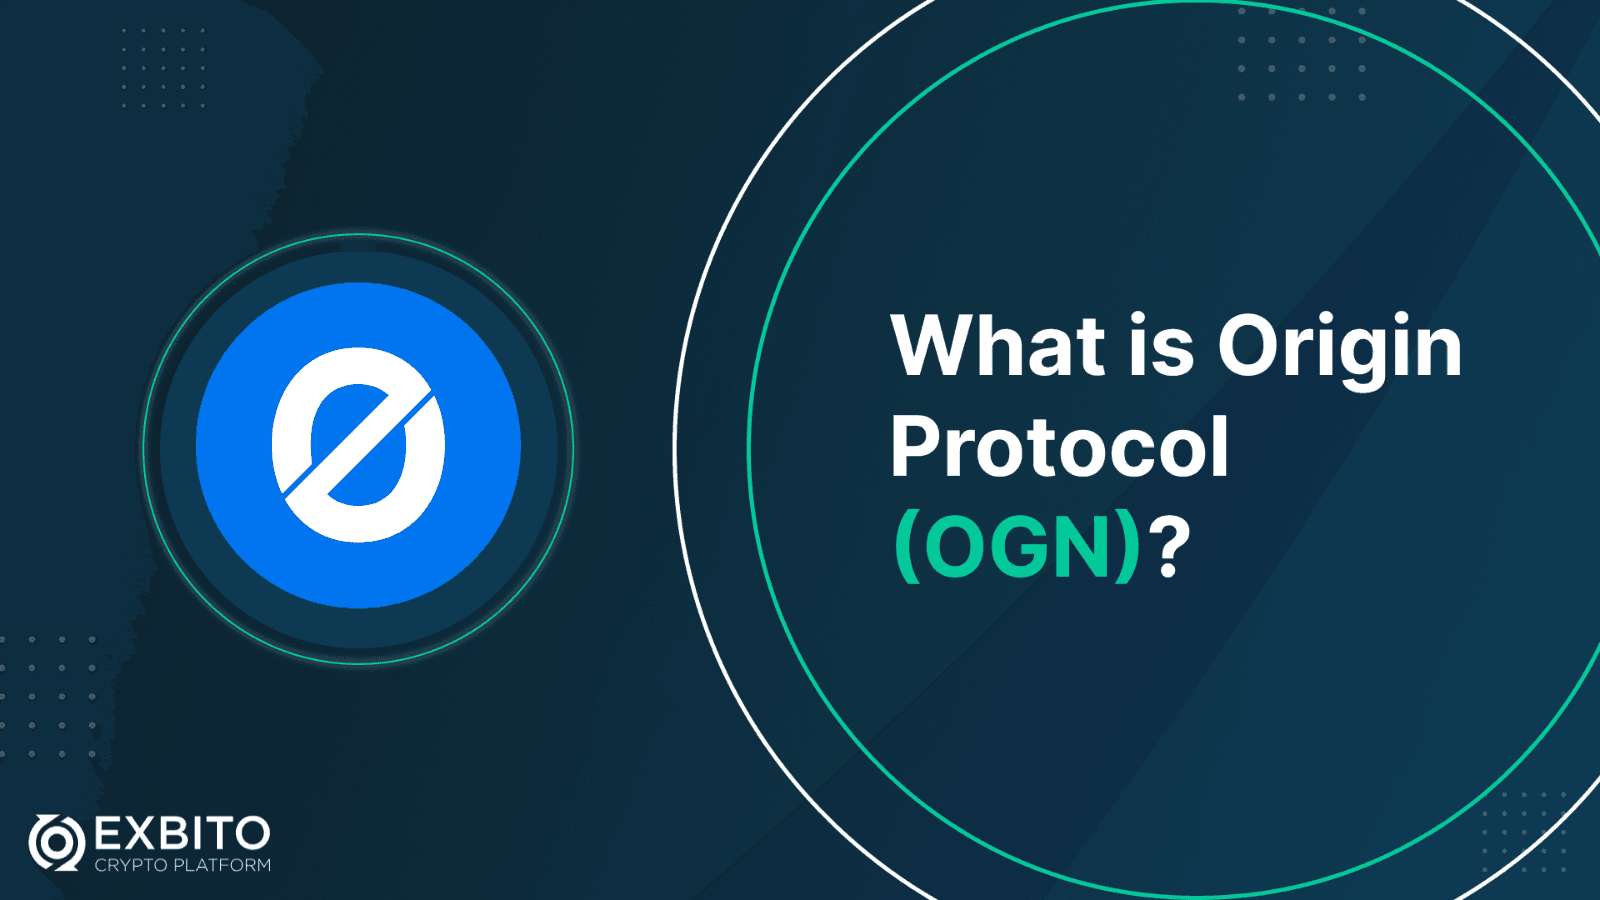 اوریجین پروتکل (Origin Protocol) چیست؟